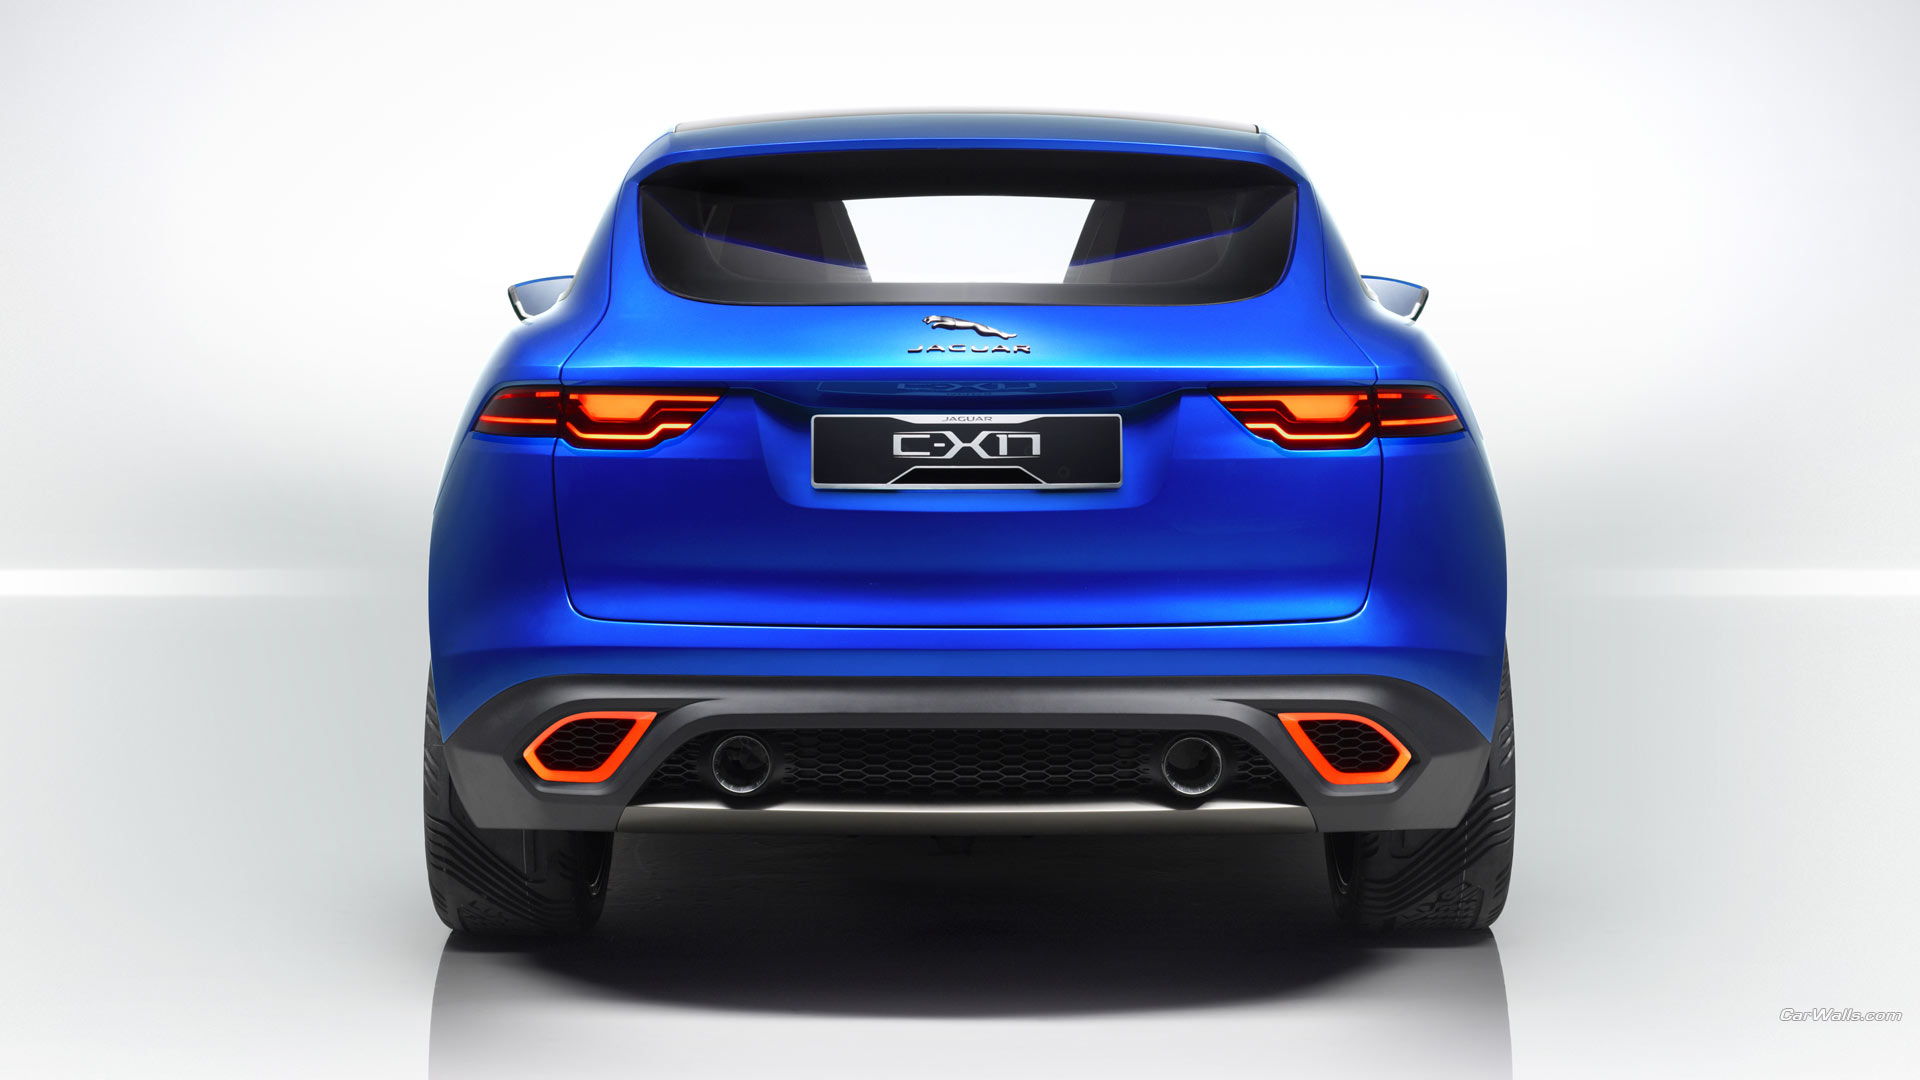 Vehicles 2013 Jaguar C-X17 Concept HD Wallpaper | Background Image